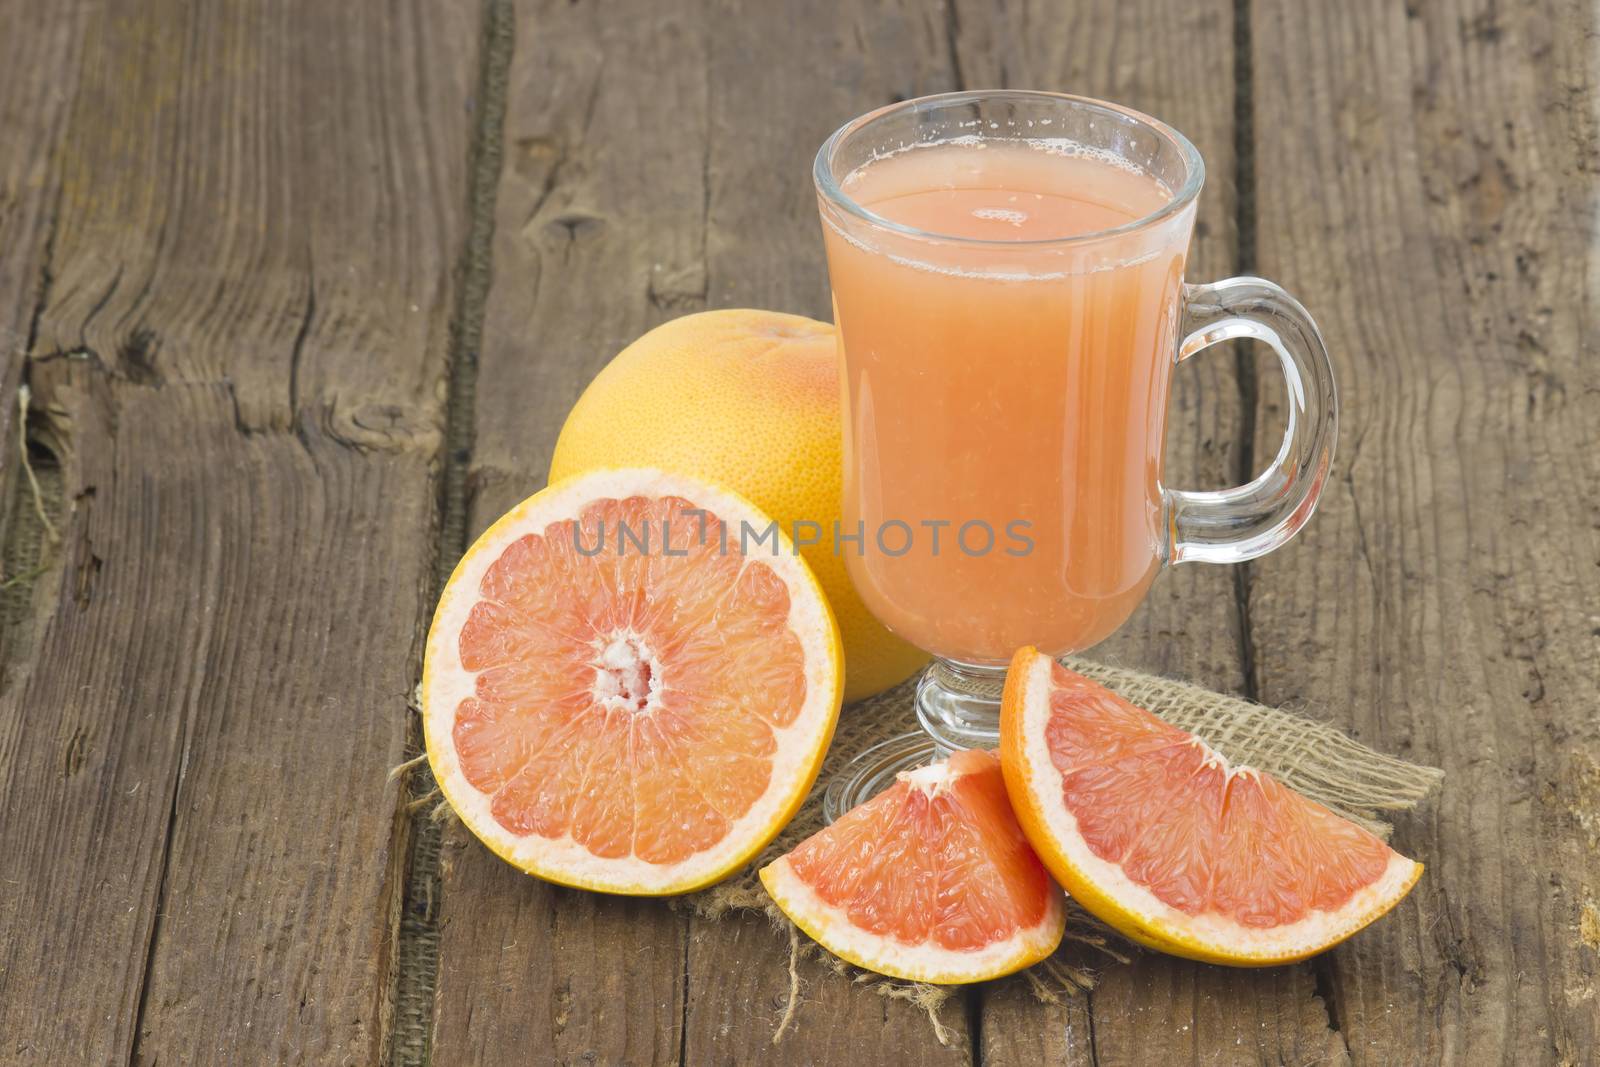 grapefruit juice and frish fruits on wooden background by miradrozdowski